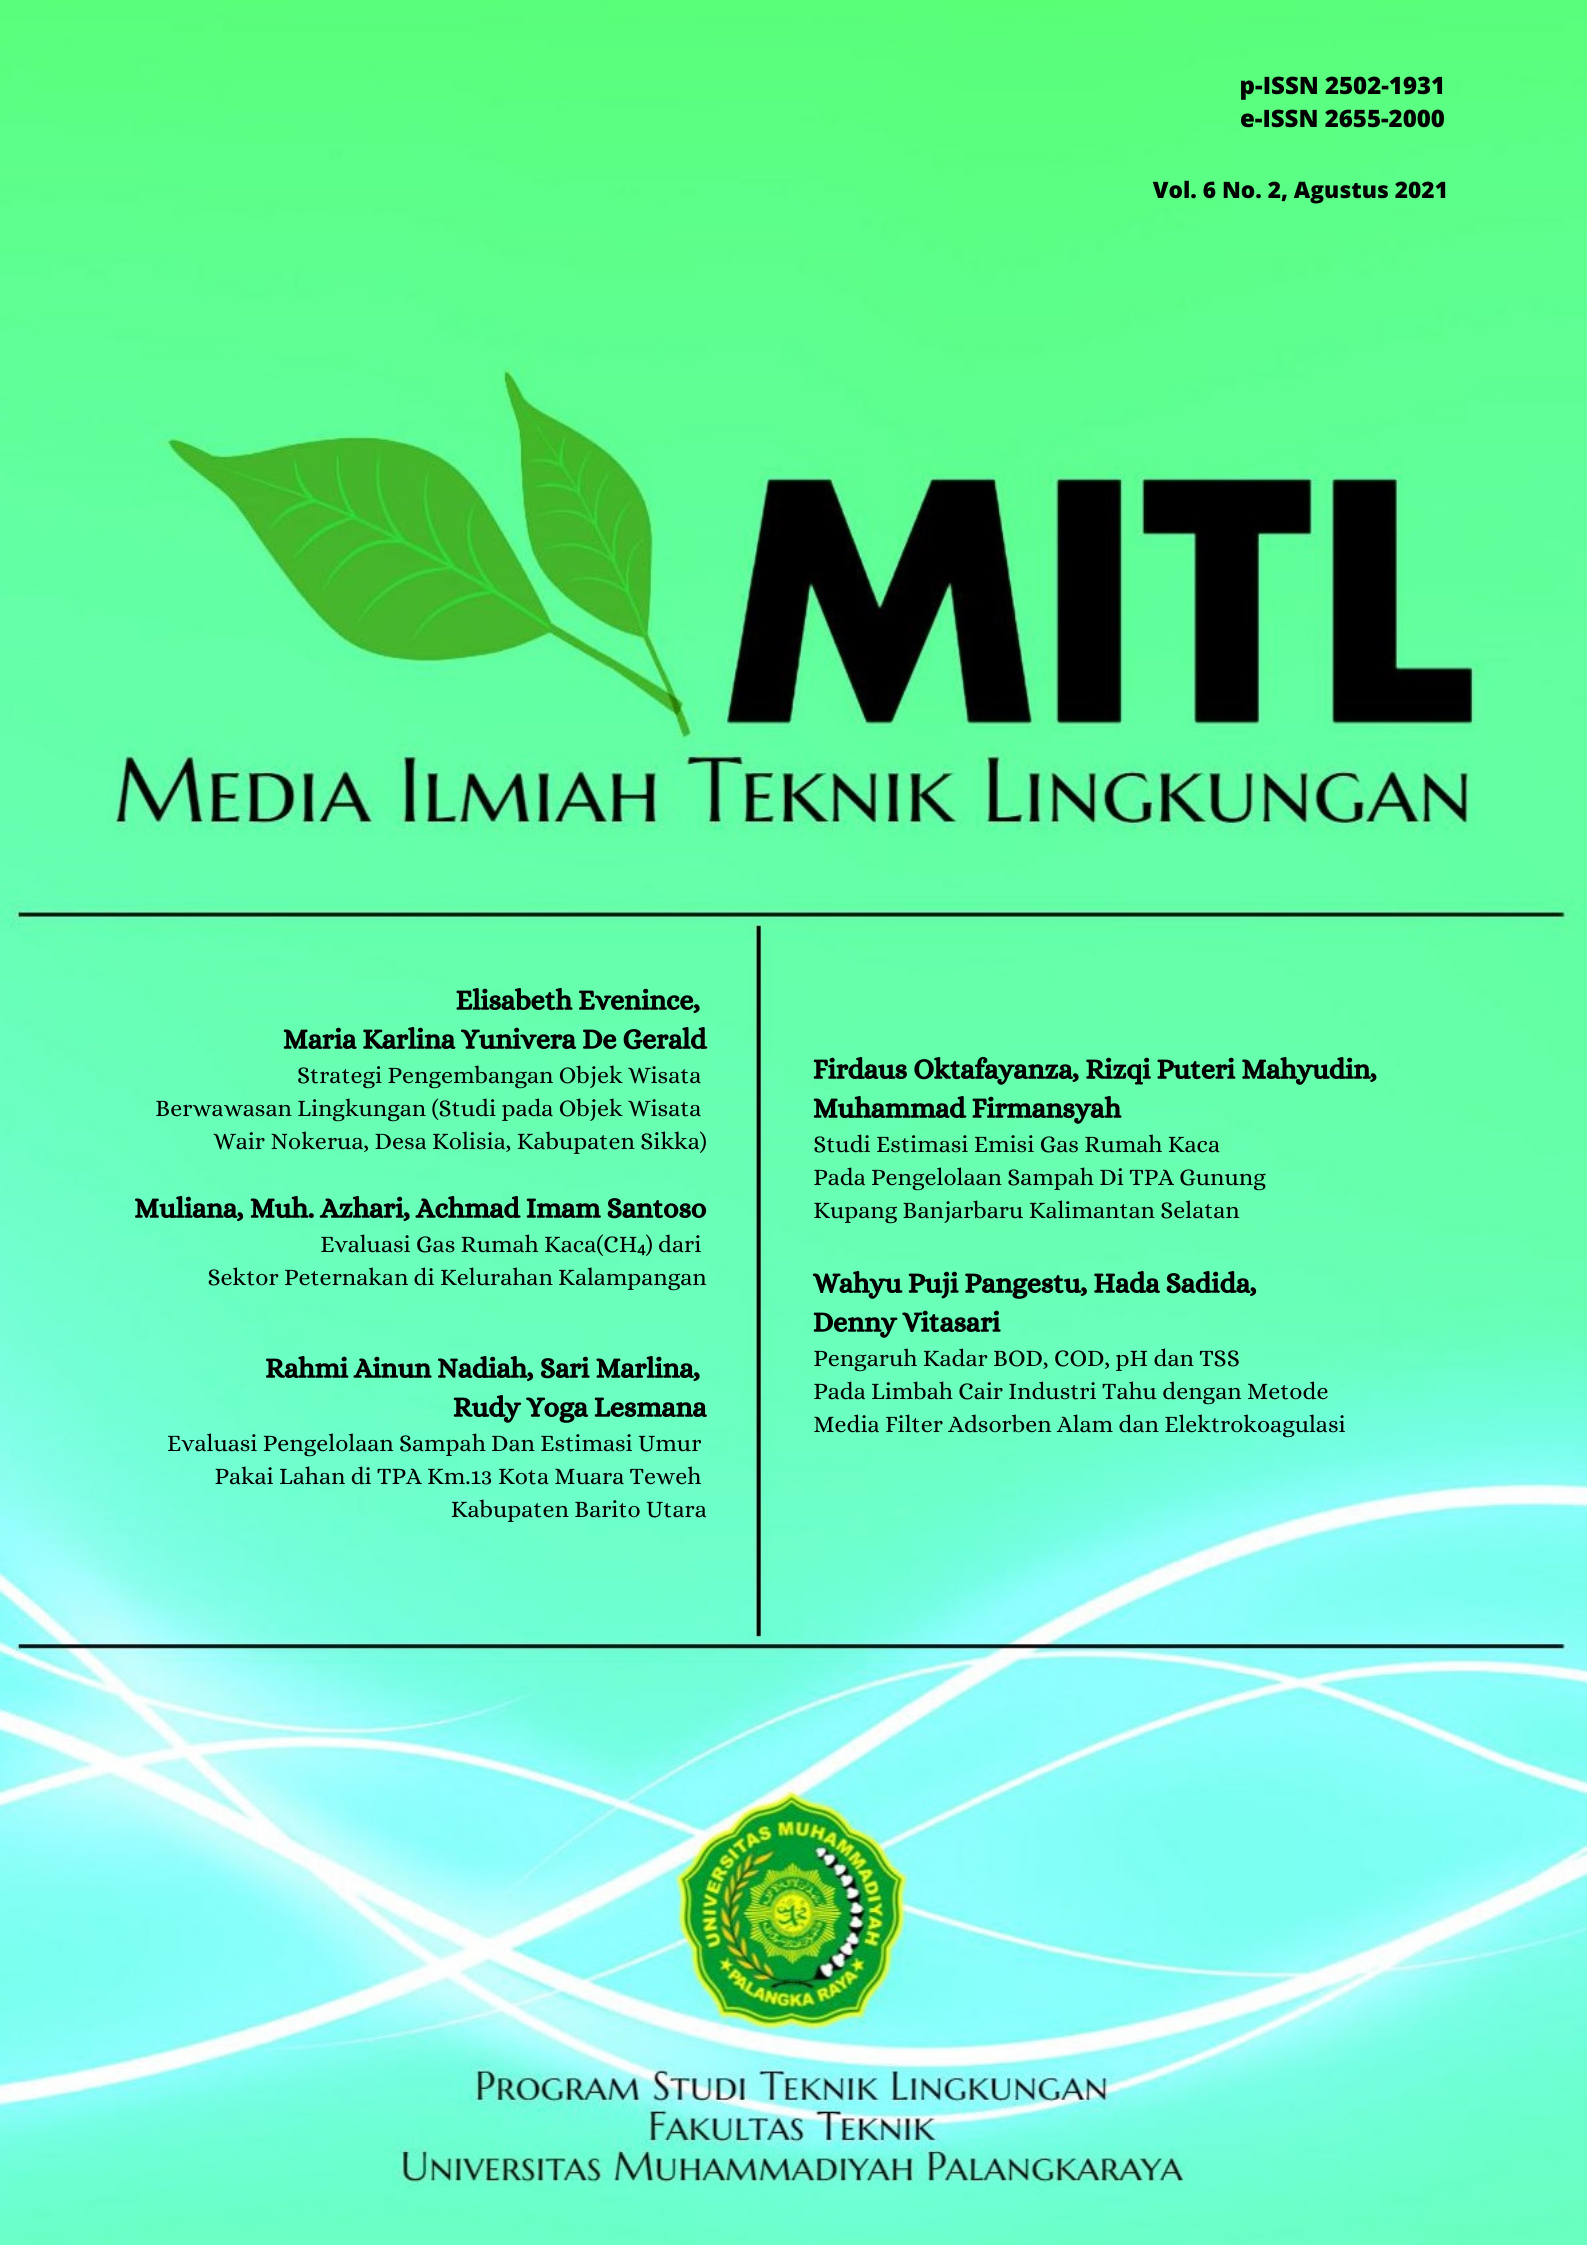 					View Vol. 6 No. 2 (2021): Media Ilmiah Teknik Lingkungan (MITL)
				